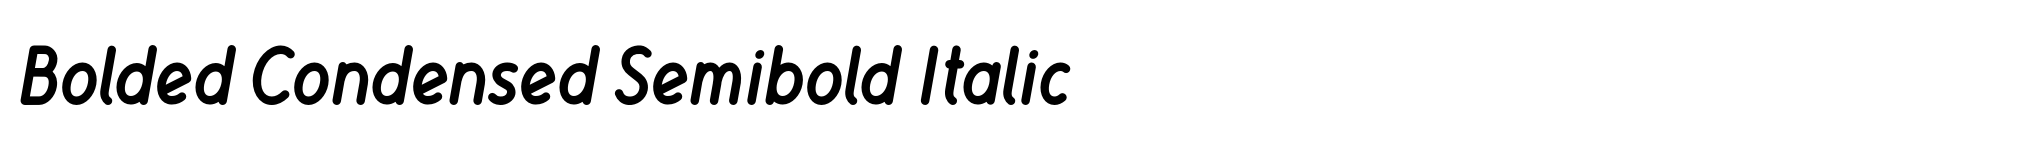 Bolded Condensed Semibold Italic image